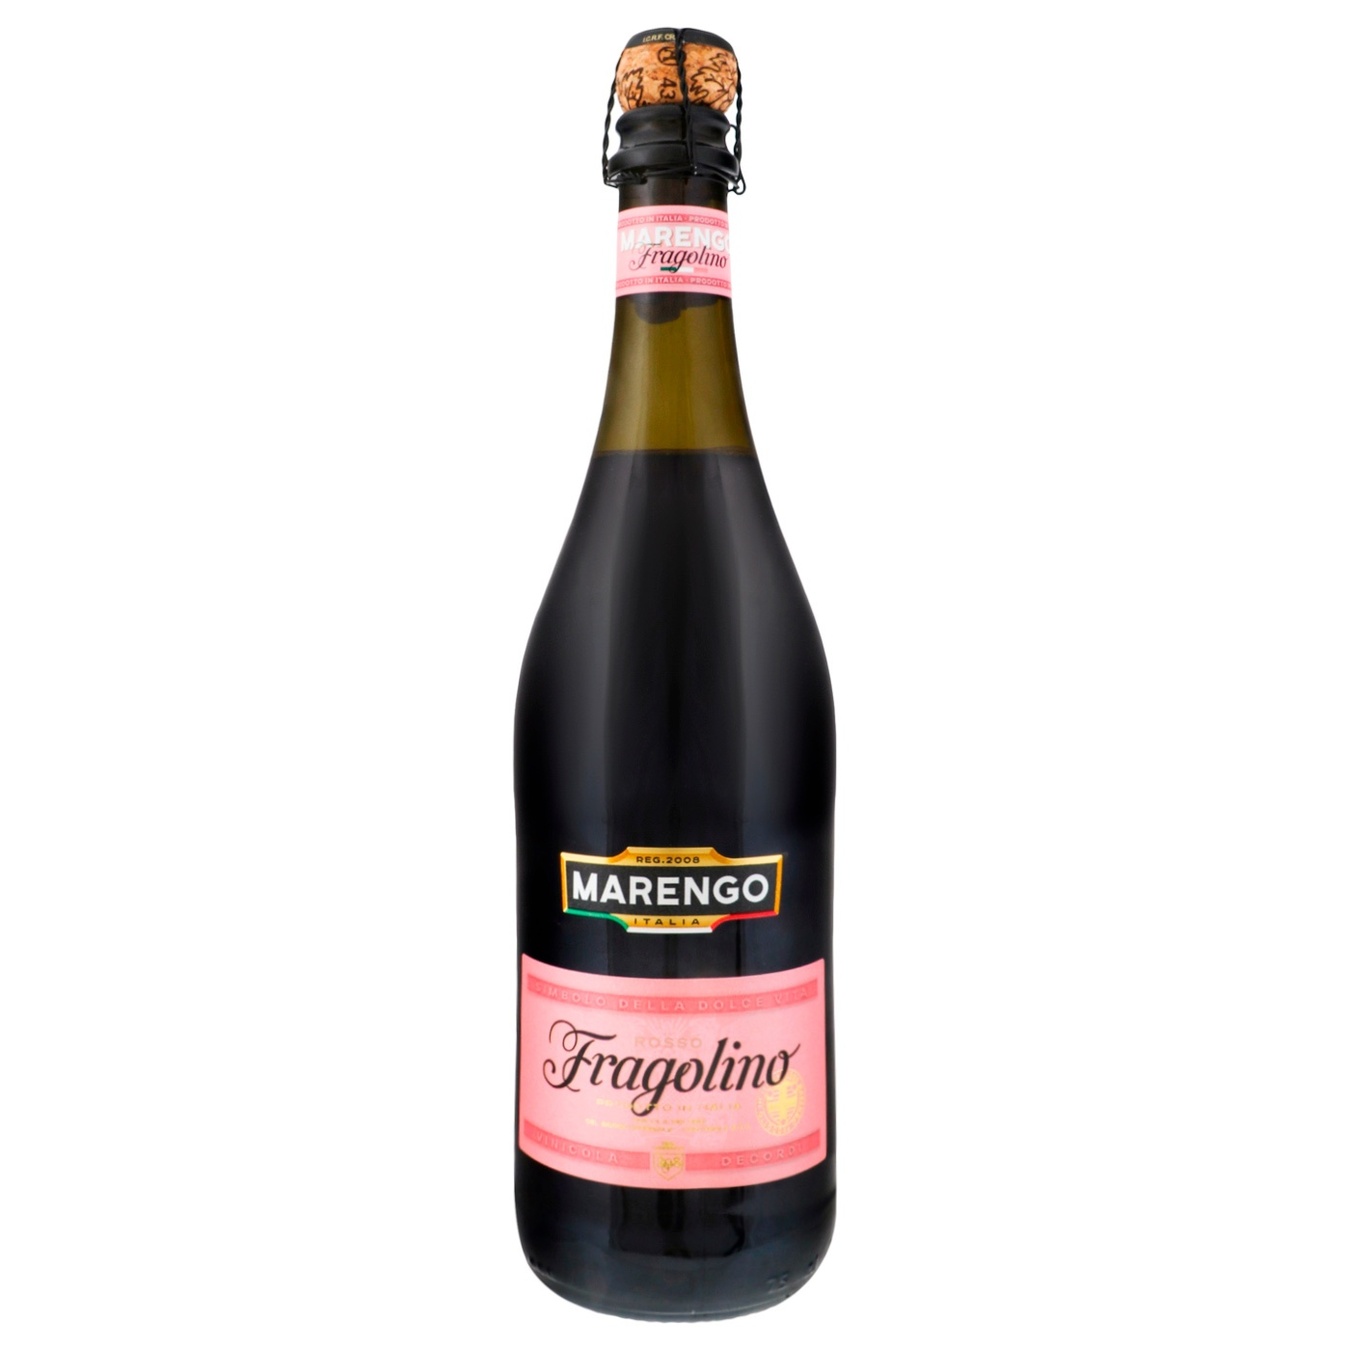 Напиток винный игристый Marengo Fragolino сладкое 7.5% 0,75л